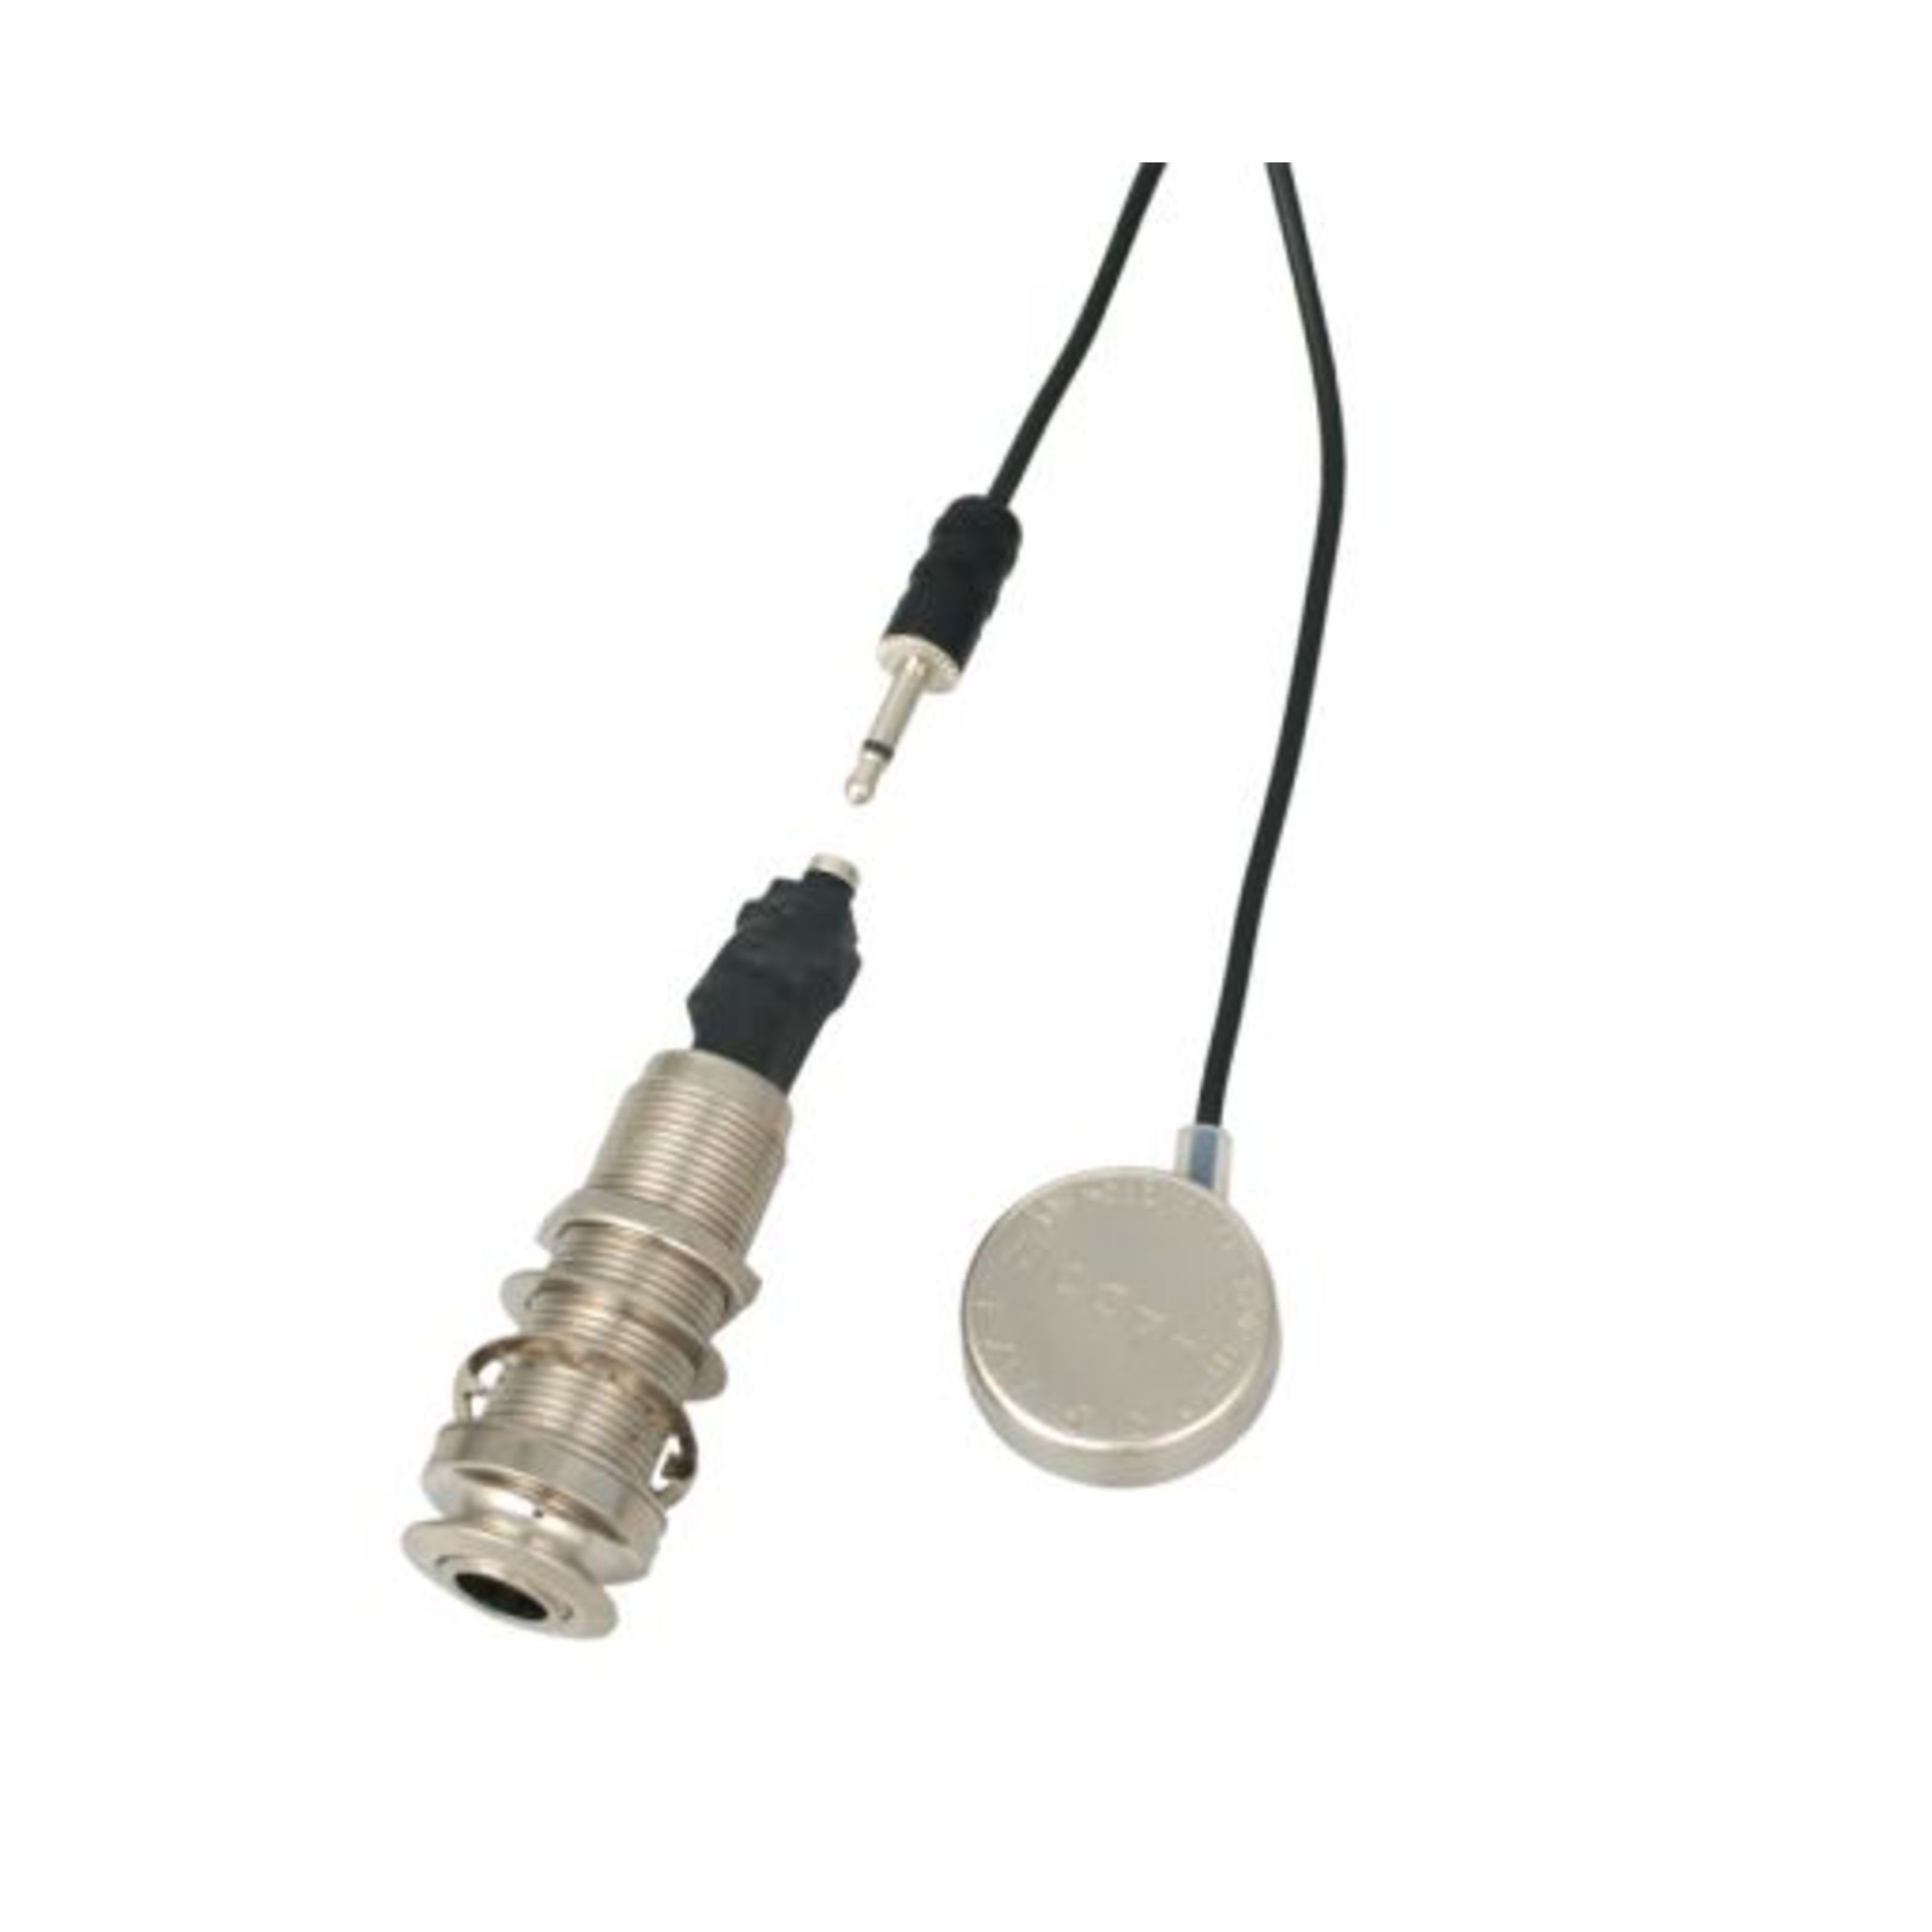 Shadow Tonabnehmer, (SH 2500E Transducer mit Endknopfausgangsbuchse, ersatzteile für Gitarren, Tonabnehmer Diverse), SH2500E Transducer - Tonabnehmer für Gitarren